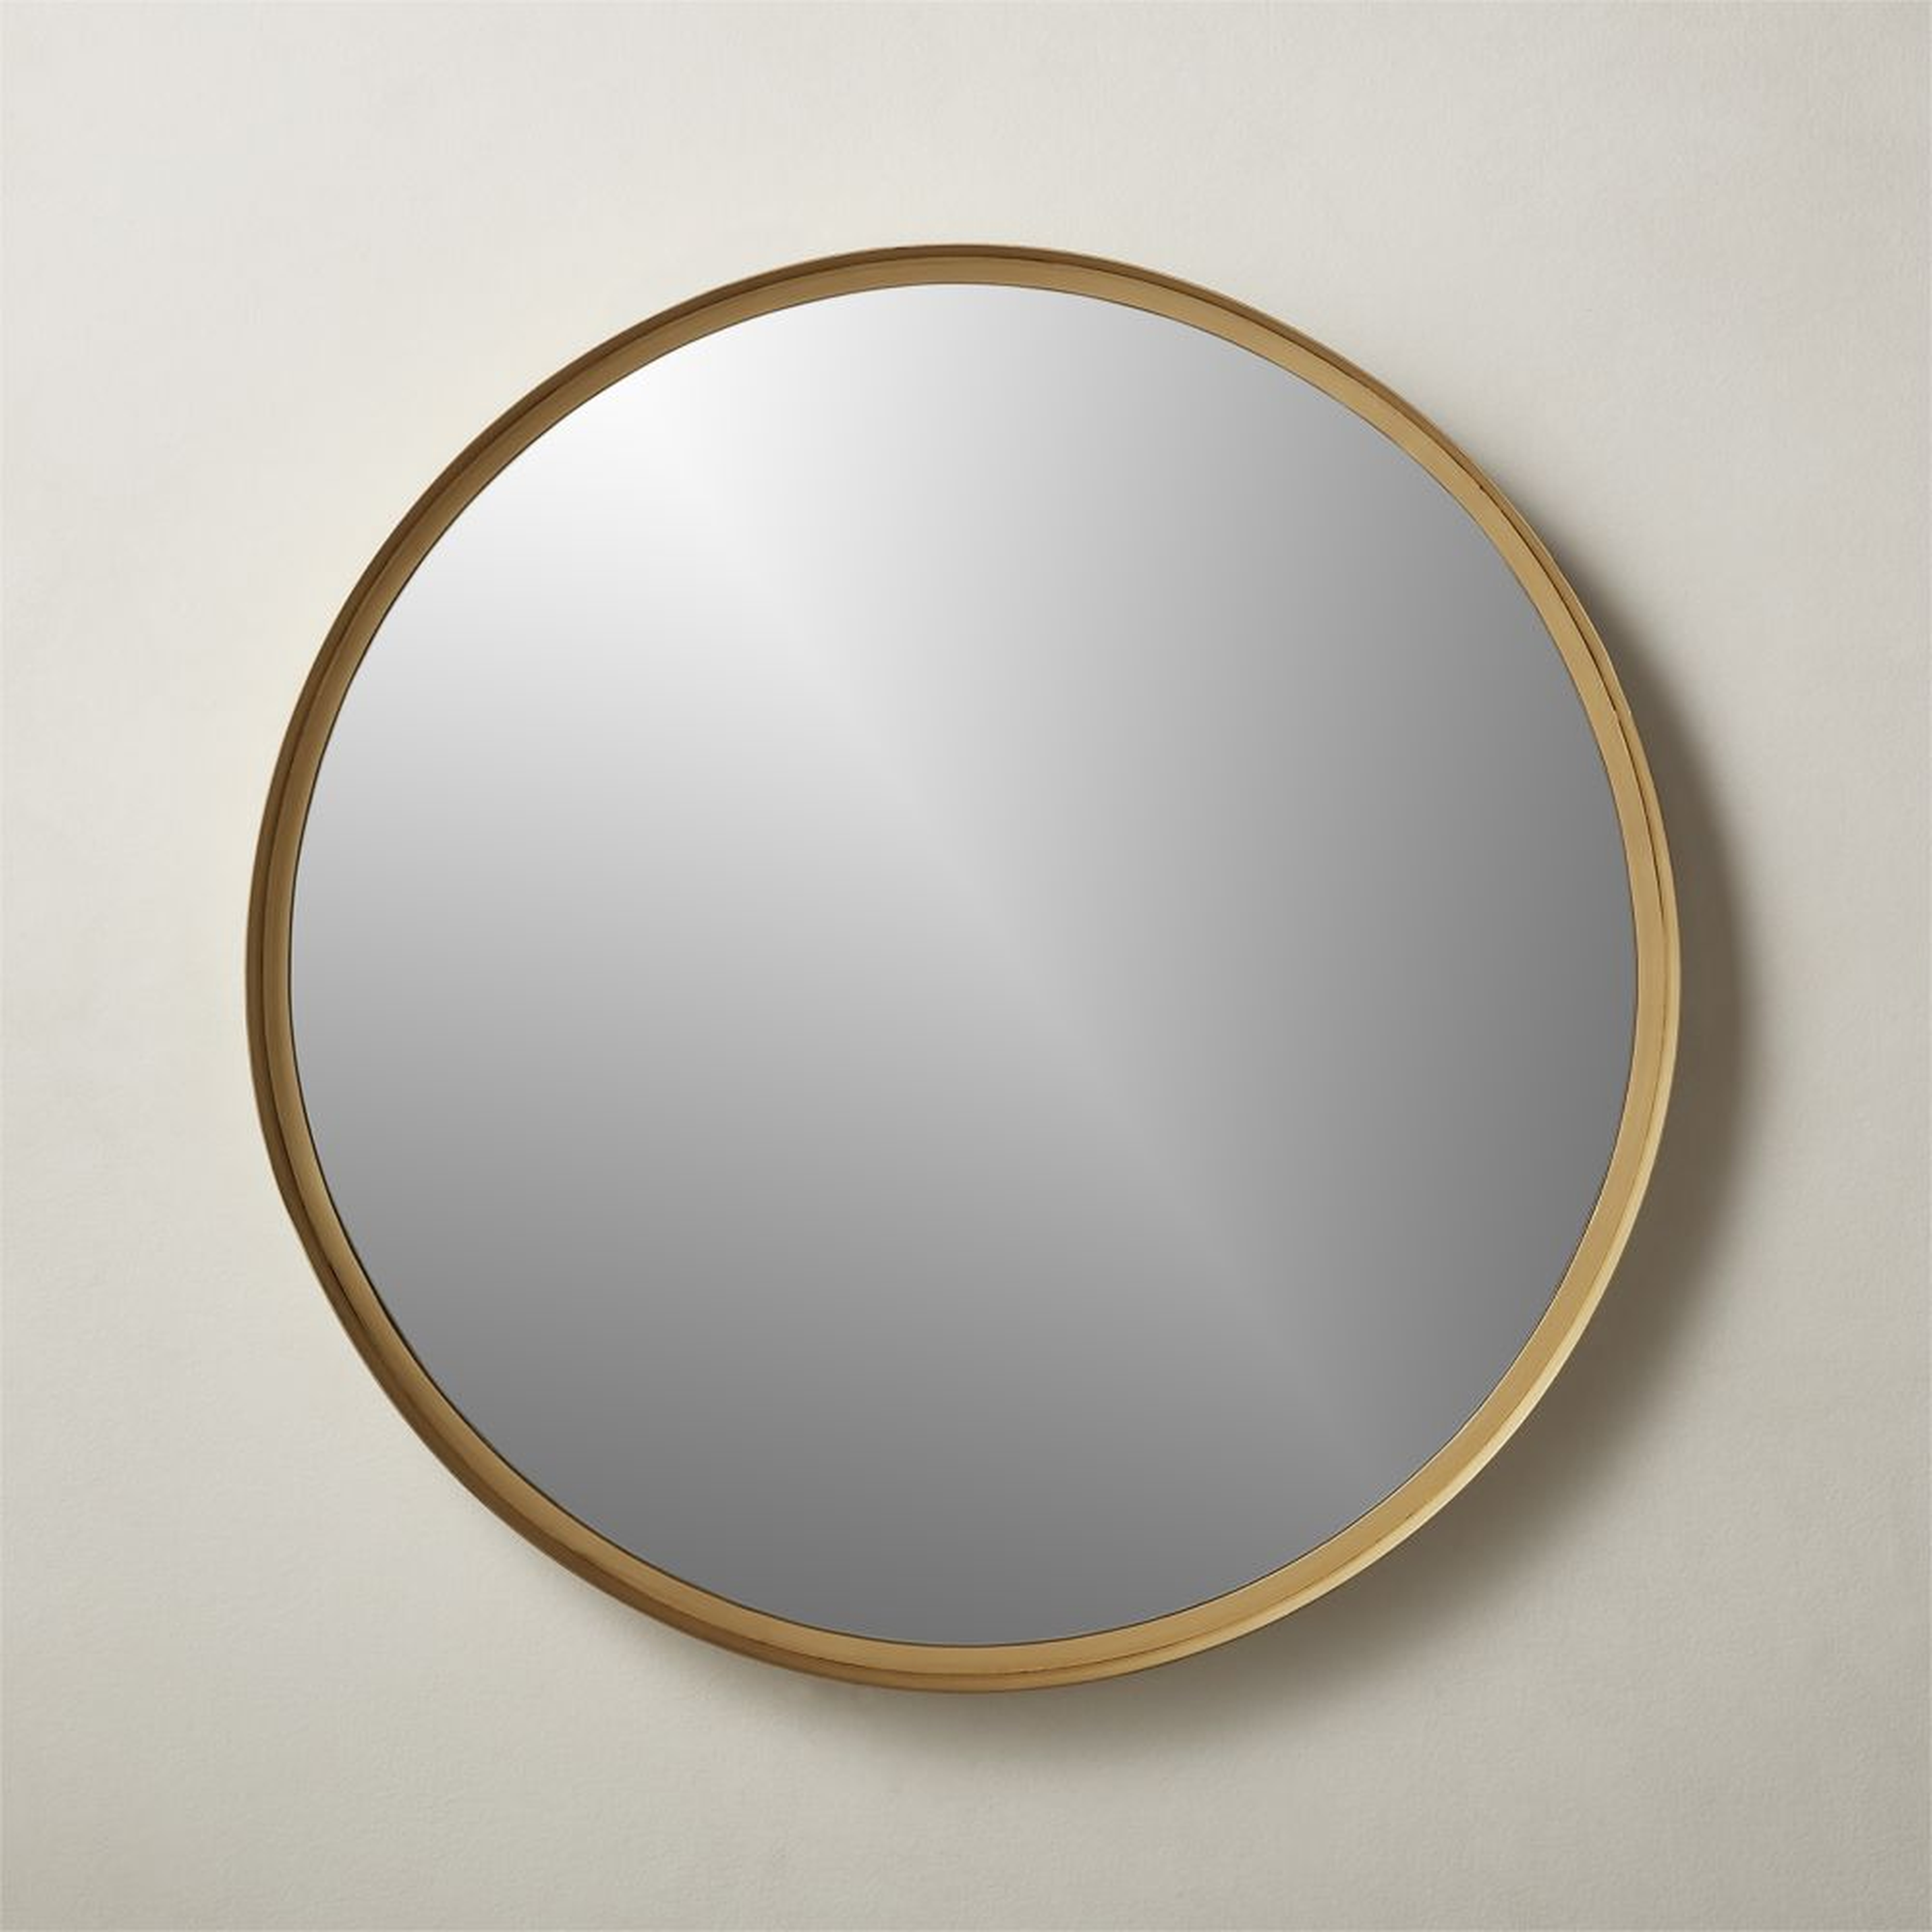 Croft Round Brass Mirror 36" - CB2